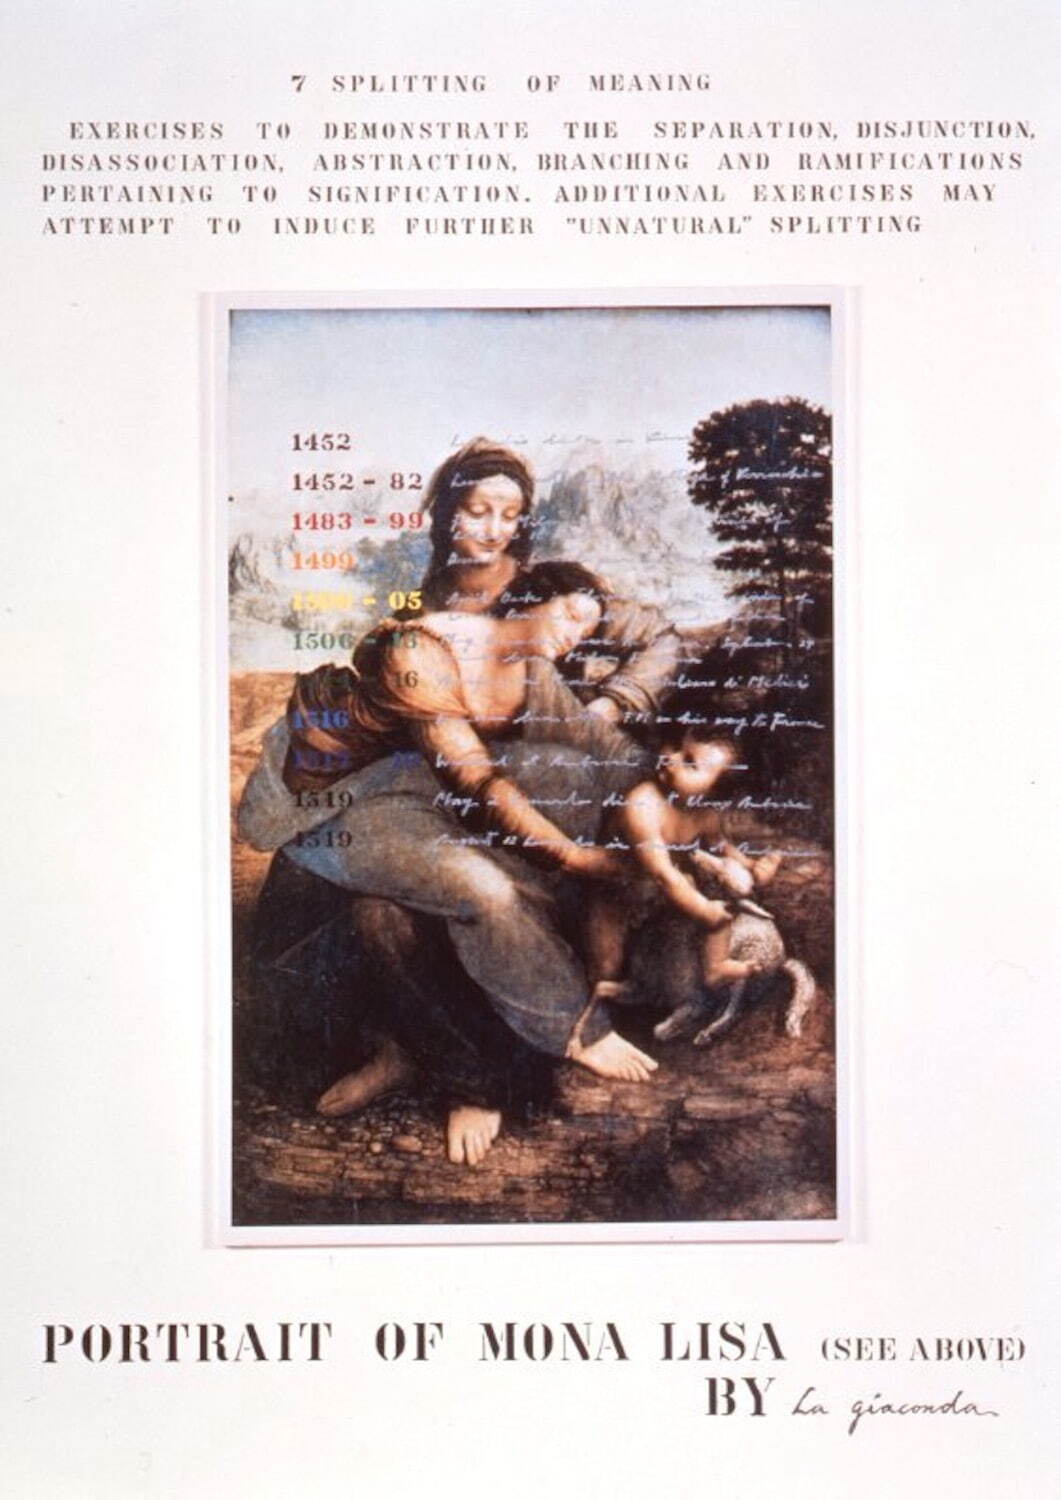 荒川修作＋マドリン・ギンズ 《意味のメカニズム》「意味の分裂」
1963年頃-1988年 油彩他、画布 244×173cm